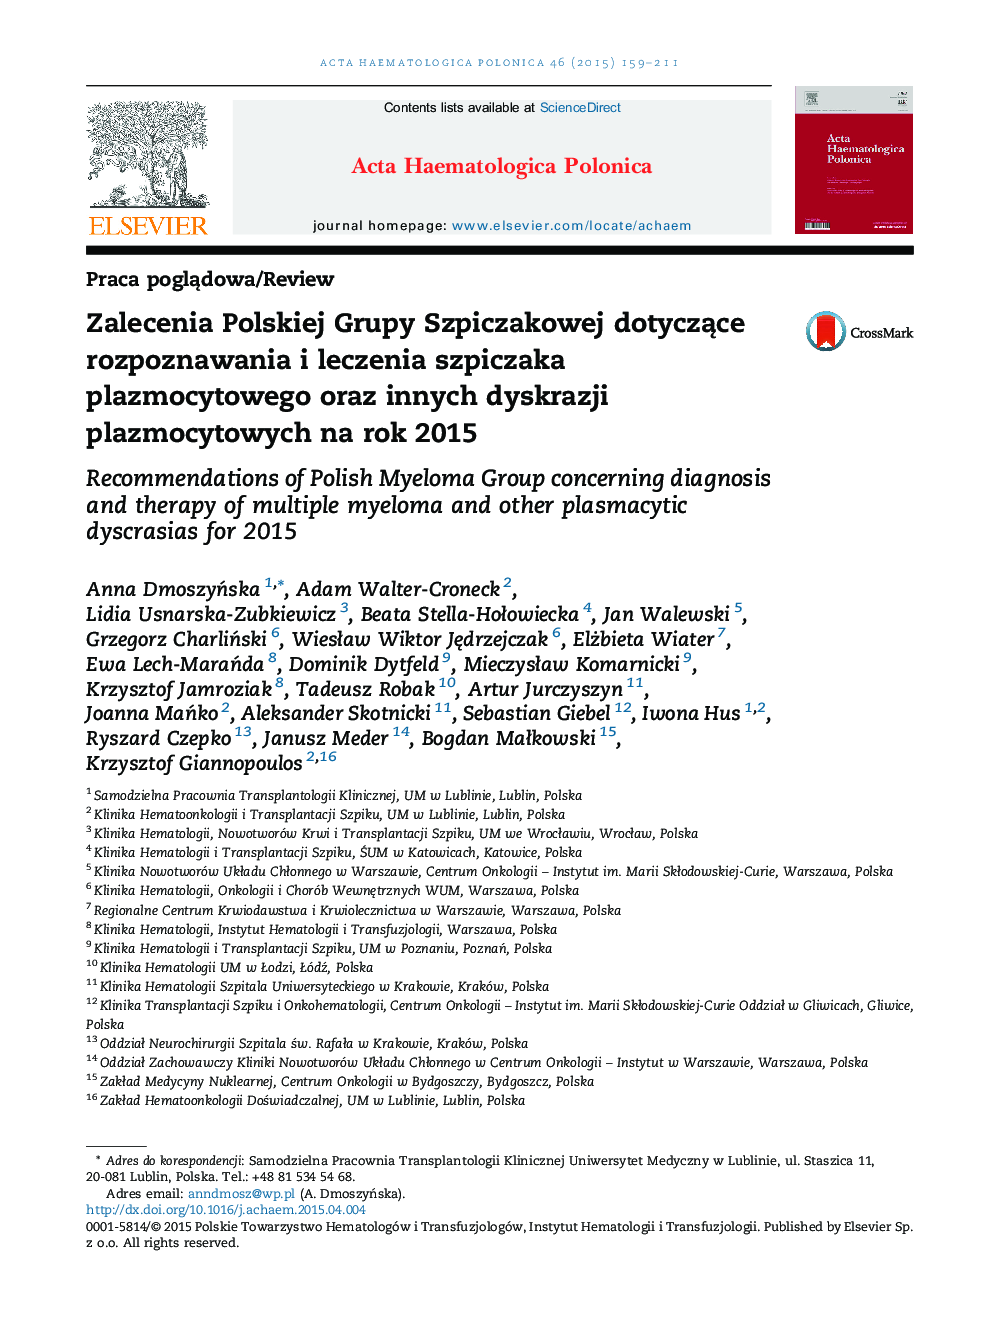 Zalecenia Polskiej Grupy Szpiczakowej dotyczące rozpoznawania i leczenia szpiczaka plazmocytowego oraz innych dyskrazji plazmocytowych na rok 2015